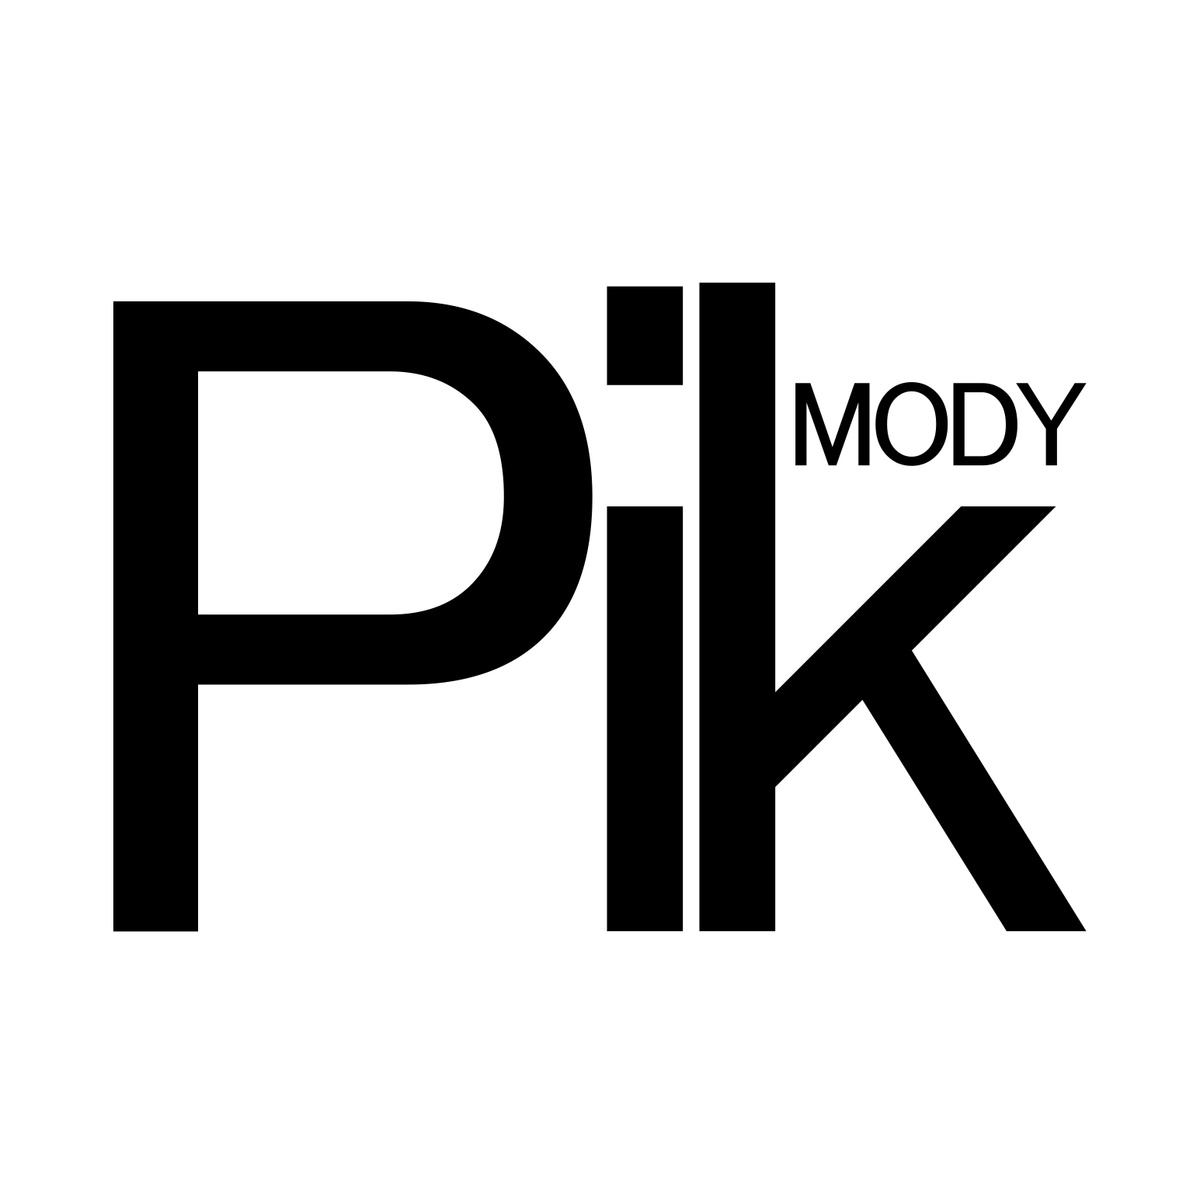 Пик Моди  Добро пожаловать в магазин ювелирных изделий "Pik Mody"! Все наши украшения производятся в Южной Корее, и мы стремимся предоставить высококачественные, стильные и уникальные товары, чтобы удовлетворить разнообразные потребности и вкусы наших клиентов. Независимо от того, ищете ли вы повседневные аксессуары или идеальный подарок для особых случаев, у нас есть широкий выбор товаров, который удовлетворит ваши требования.  Наш ассортимент охватывает различные стили и тематики, от классики до моды, от простоты до роскоши, от индивидуальности до элегантности - у нас всегда найдется что-то подходящее для вас. Мы постоянно обновляем наш ассортимент, следуя за последними трендами и модными тенденциями, чтобы гарантировать, что вы всегда сможете найти желаемый товар.  Мы уделяем большое внимание опыту и удовлетворенности наших клиентов, стремясь предоставить качественное обслуживание и приятный опыт покупок. На все ювелирные изделия предоставляется возможность получения скидки, и наш дружелюбный сервисный персонал всегда готов ответить на ваши вопросы и оказать профессиональную помощь и консультации.  Благодарим вас за посещение! Мы надеемся, что наши товары принесут вам удовольствие и удовлетворение, и с нетерпением ждем, чтобы вы сделали свой выбор.